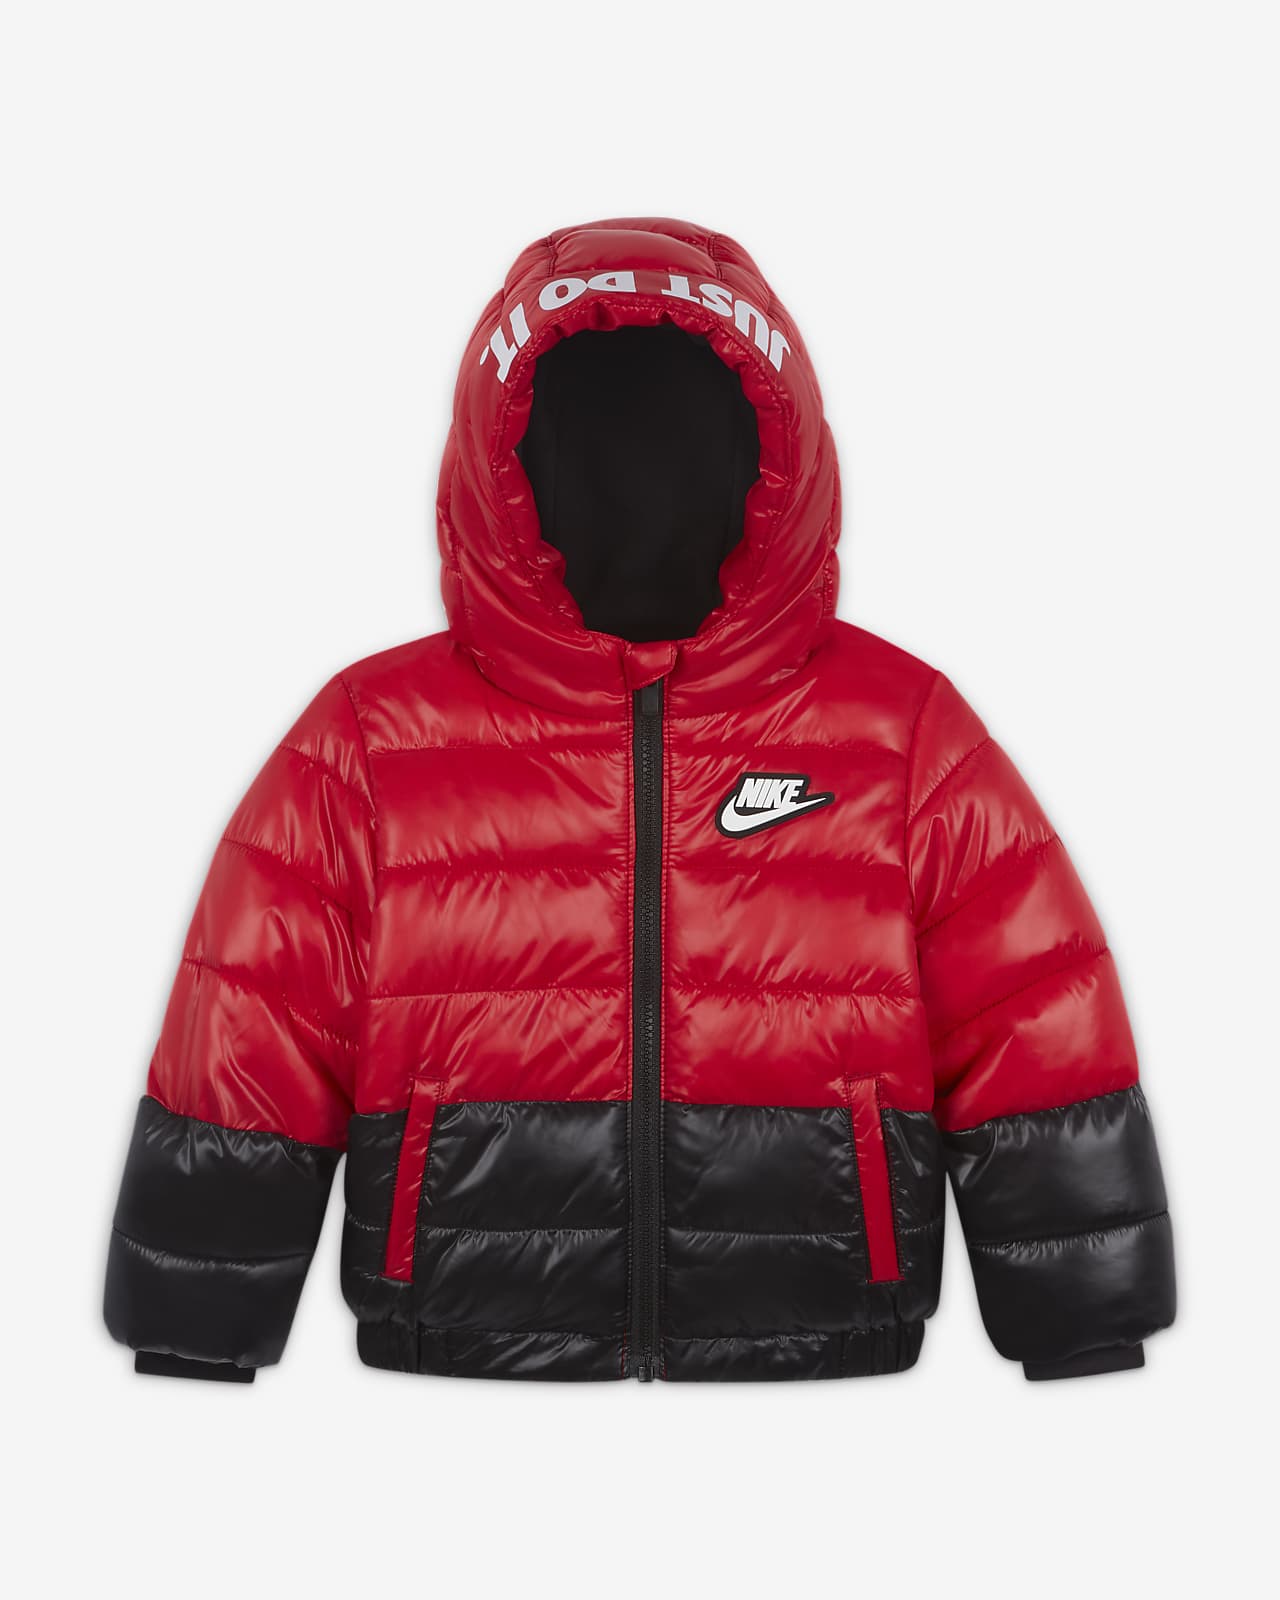 Nike Sportswear Baby (12-24M) Puffer Jacket